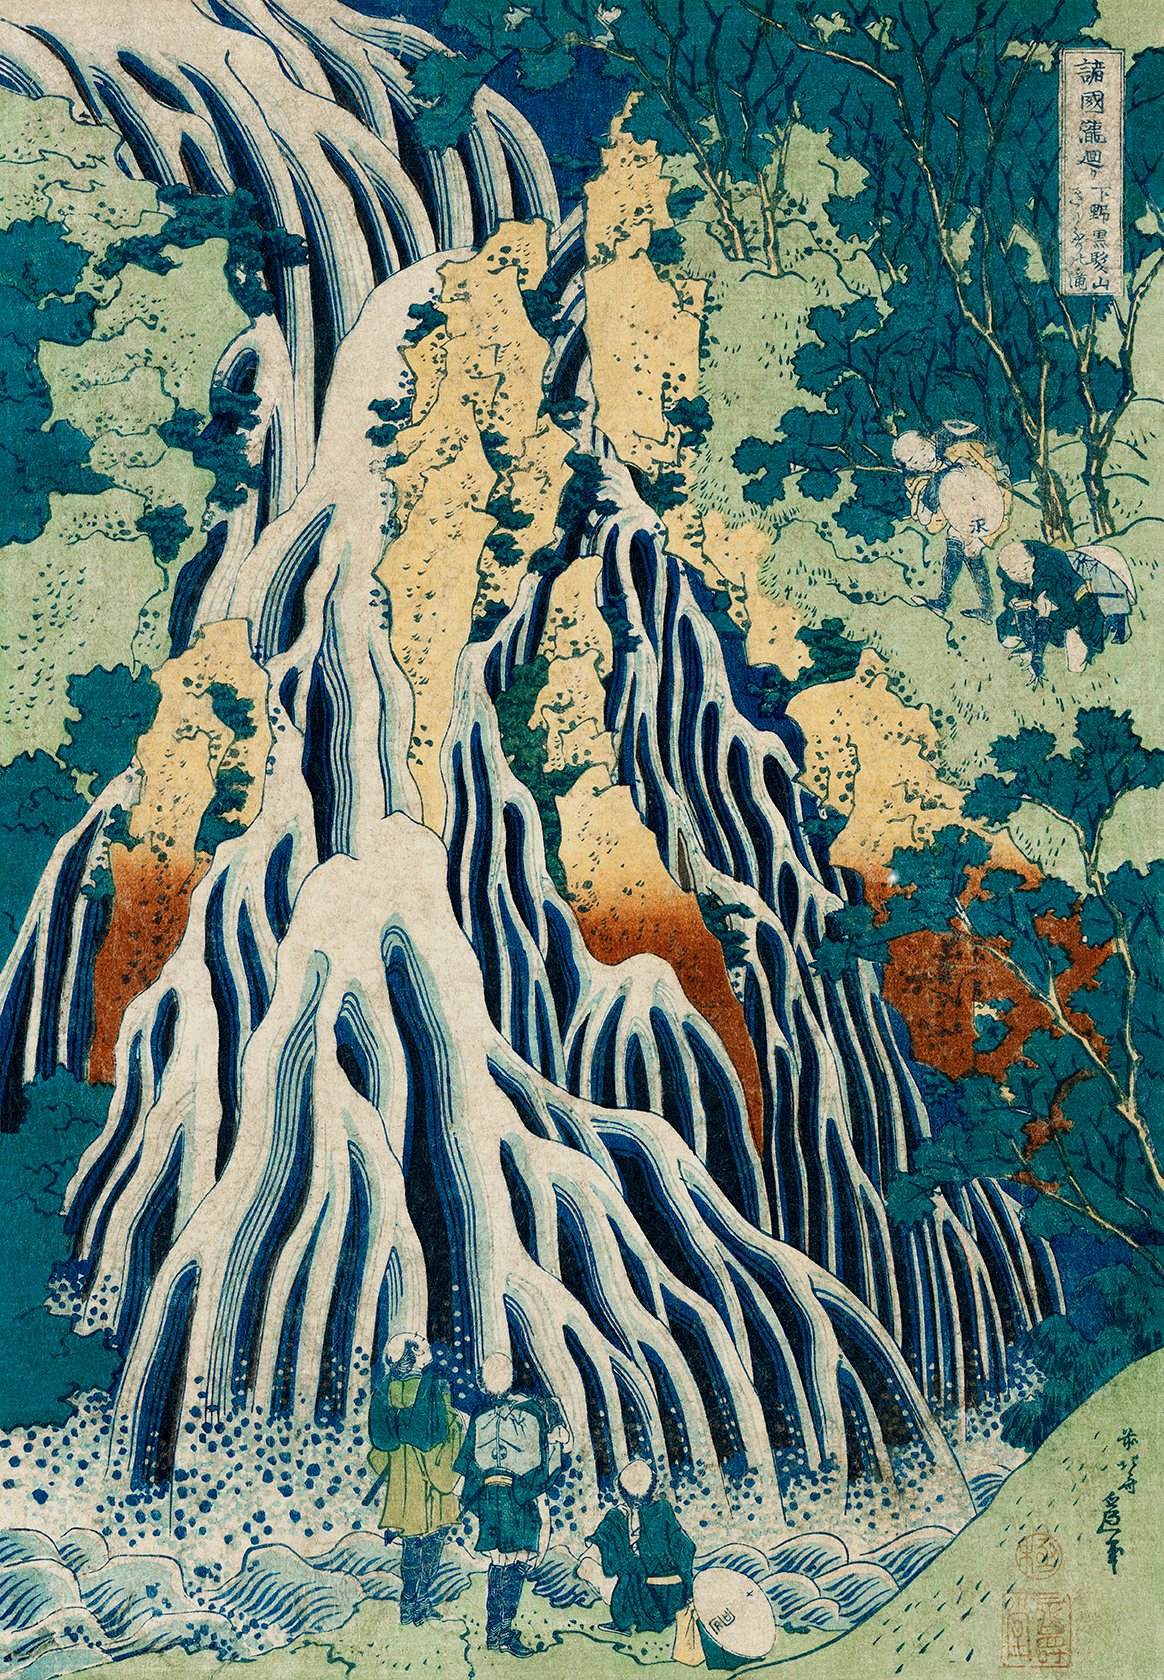 Shimotsuke Waterfall by Hokusai